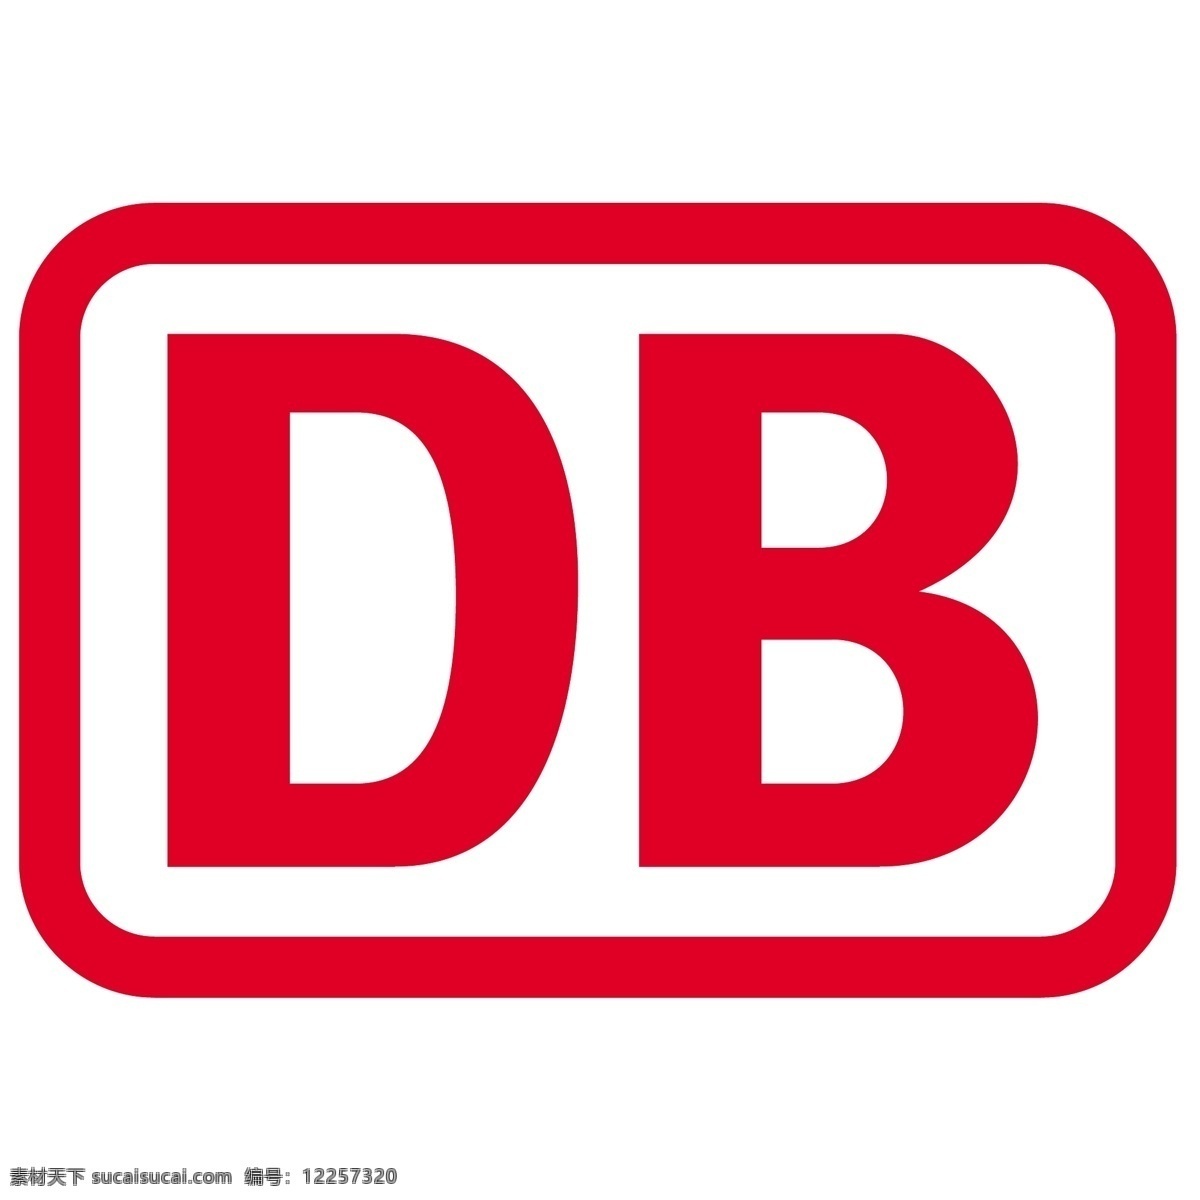 德国 铁路 股份公司 德意志 联邦 deutsche bahn ag 矢量 德国联邦 公司 标识 向量 铁路公司 标志 标志的ag ag矢量设计 矢量图 建筑家居